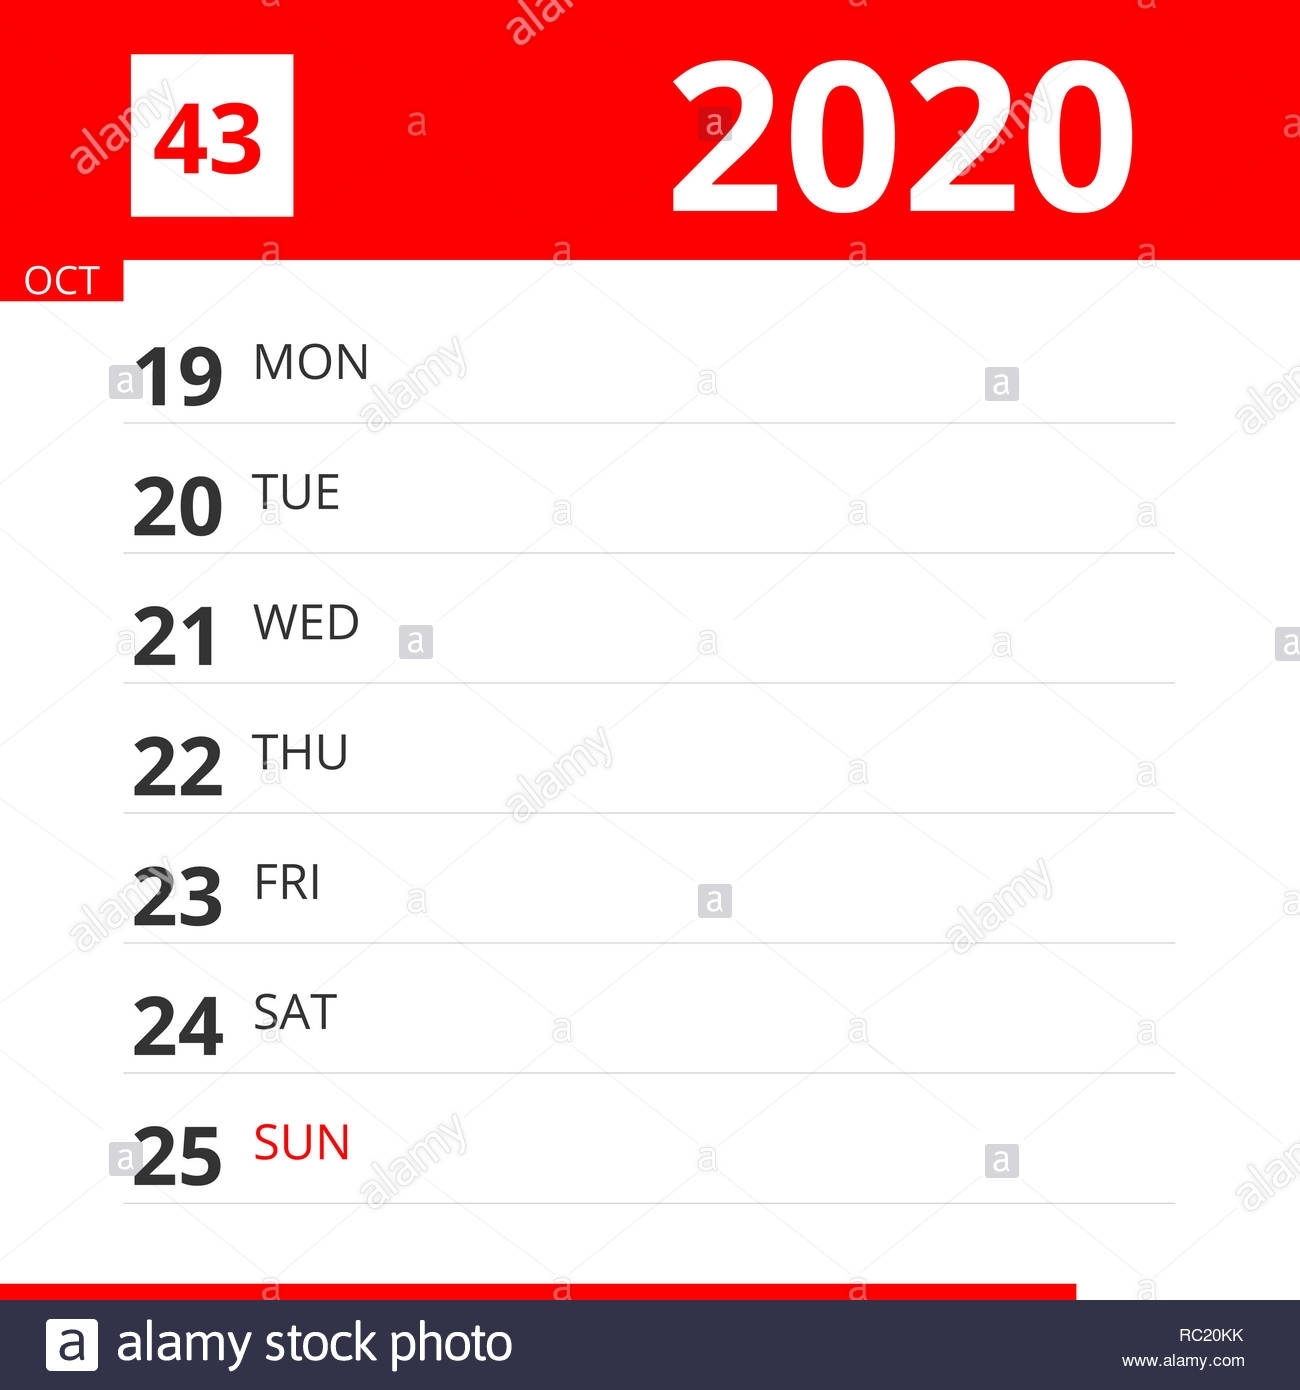 Calendar Planner For Week 43 In 2020, Ends October 25, 2020